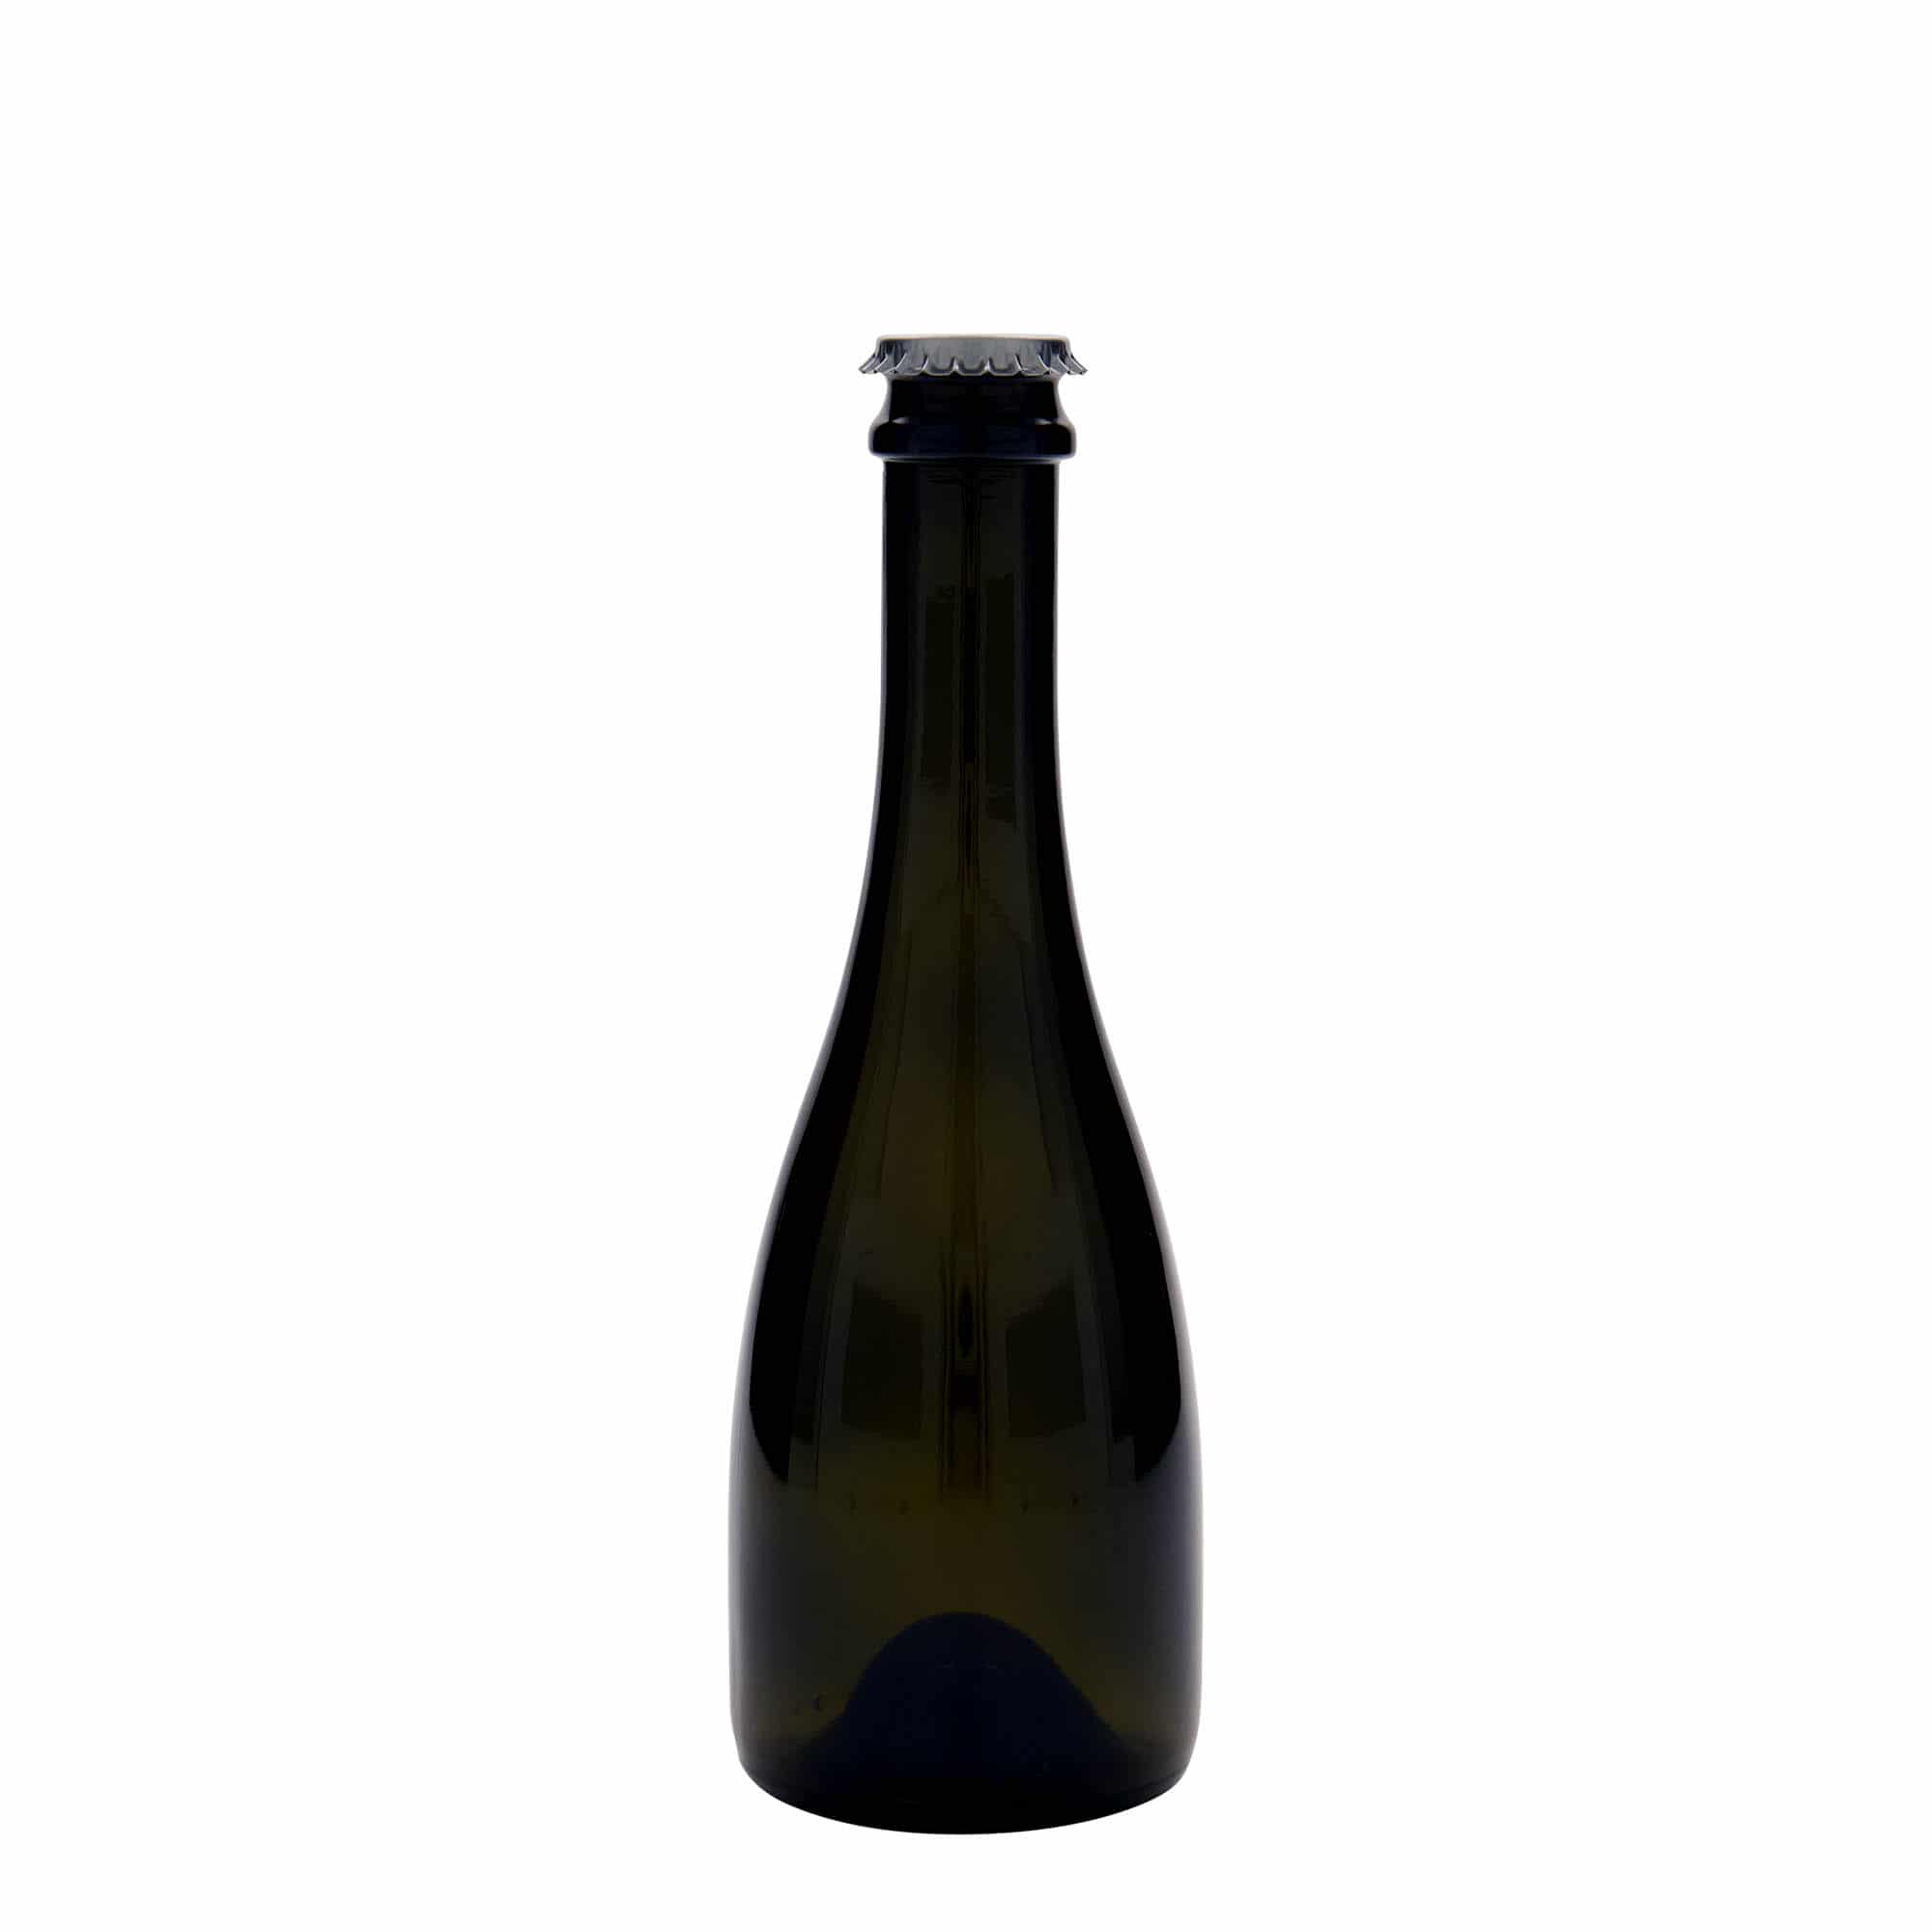 330 ml butelka do wina/szampana 'Tosca', szkło, kolor zielony antyczny, zamknięcie: kapsel